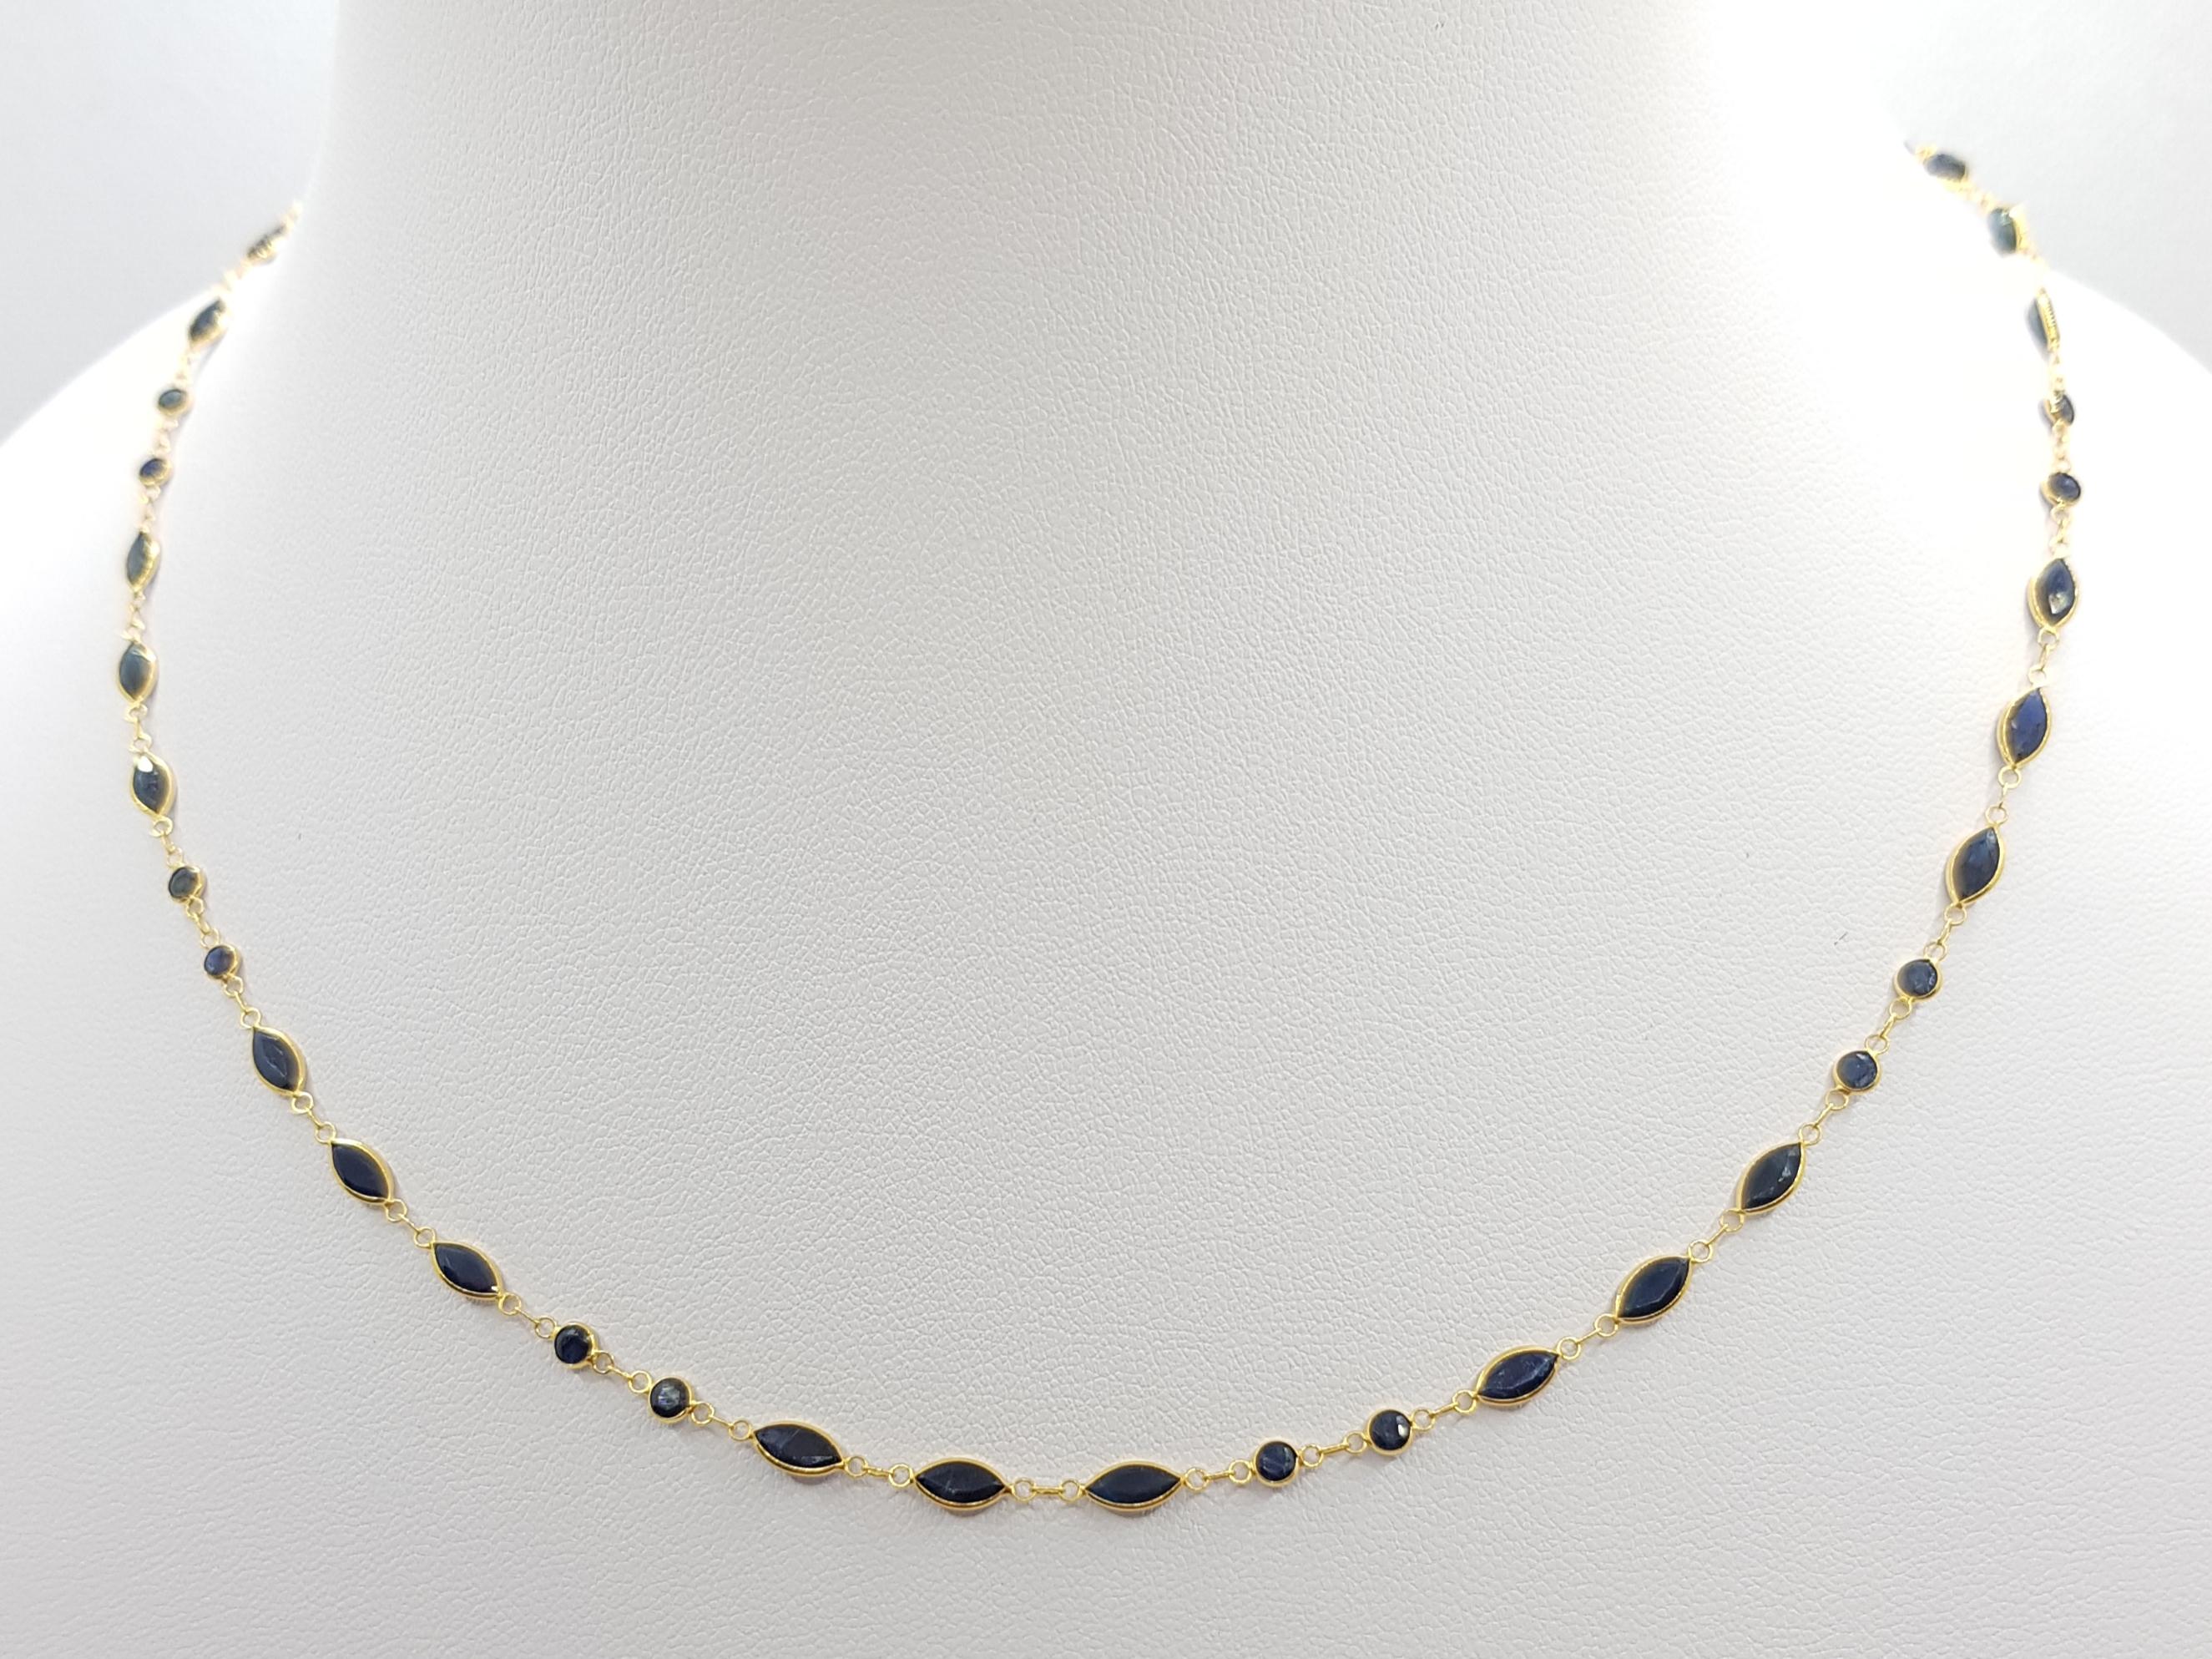 Blauer Saphir 9,73 Karat Halskette in 18 Karat Goldfassung

Breite:  0.3 cm 
Länge: 47,5 cm
Gesamtgewicht: 3,68 Gramm

